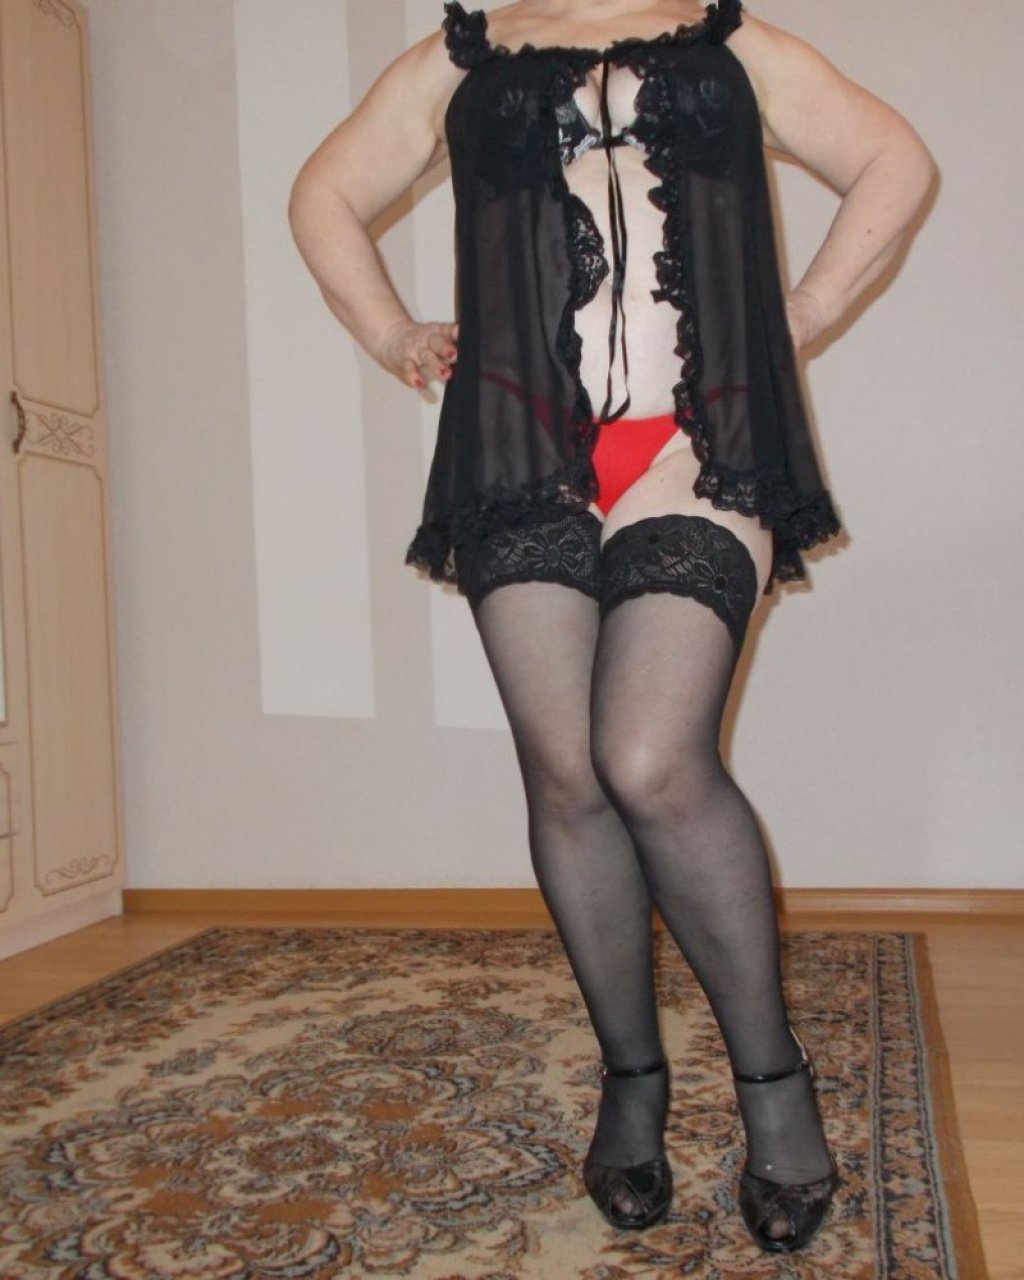 Оля: Проститутка-индивидуалка в Белгороде